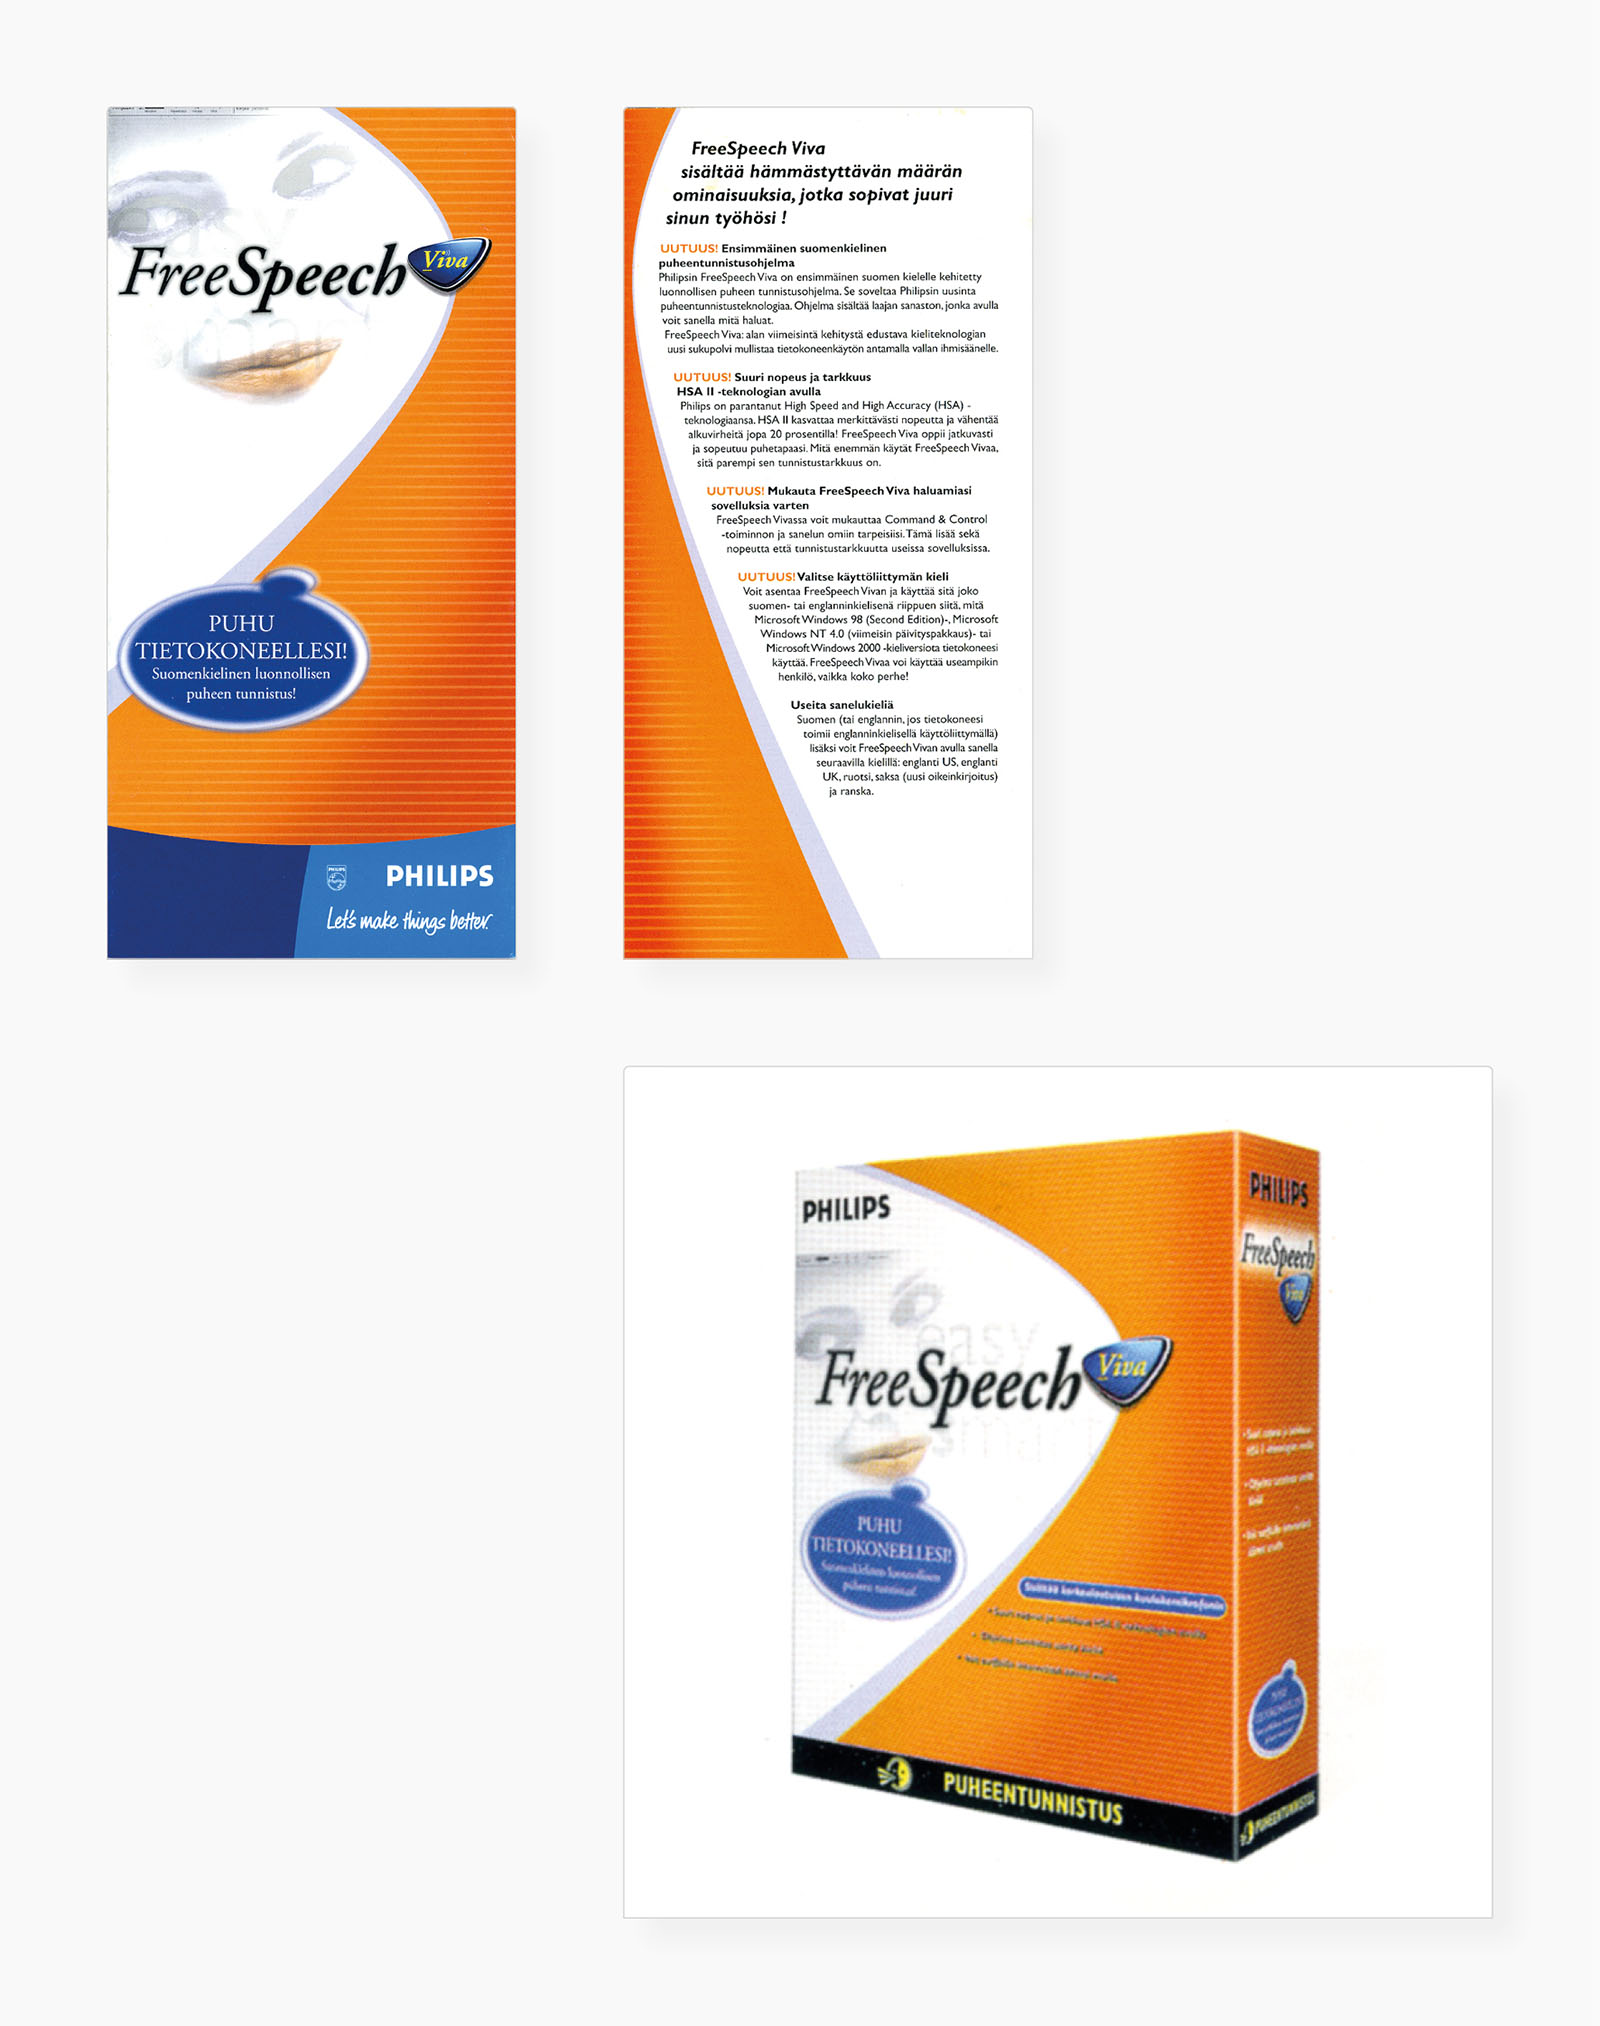 Auswahl von Anwendungen für Produktlinie "FreeSpeech Viva"  (Folder und Geräte-Verpackung)